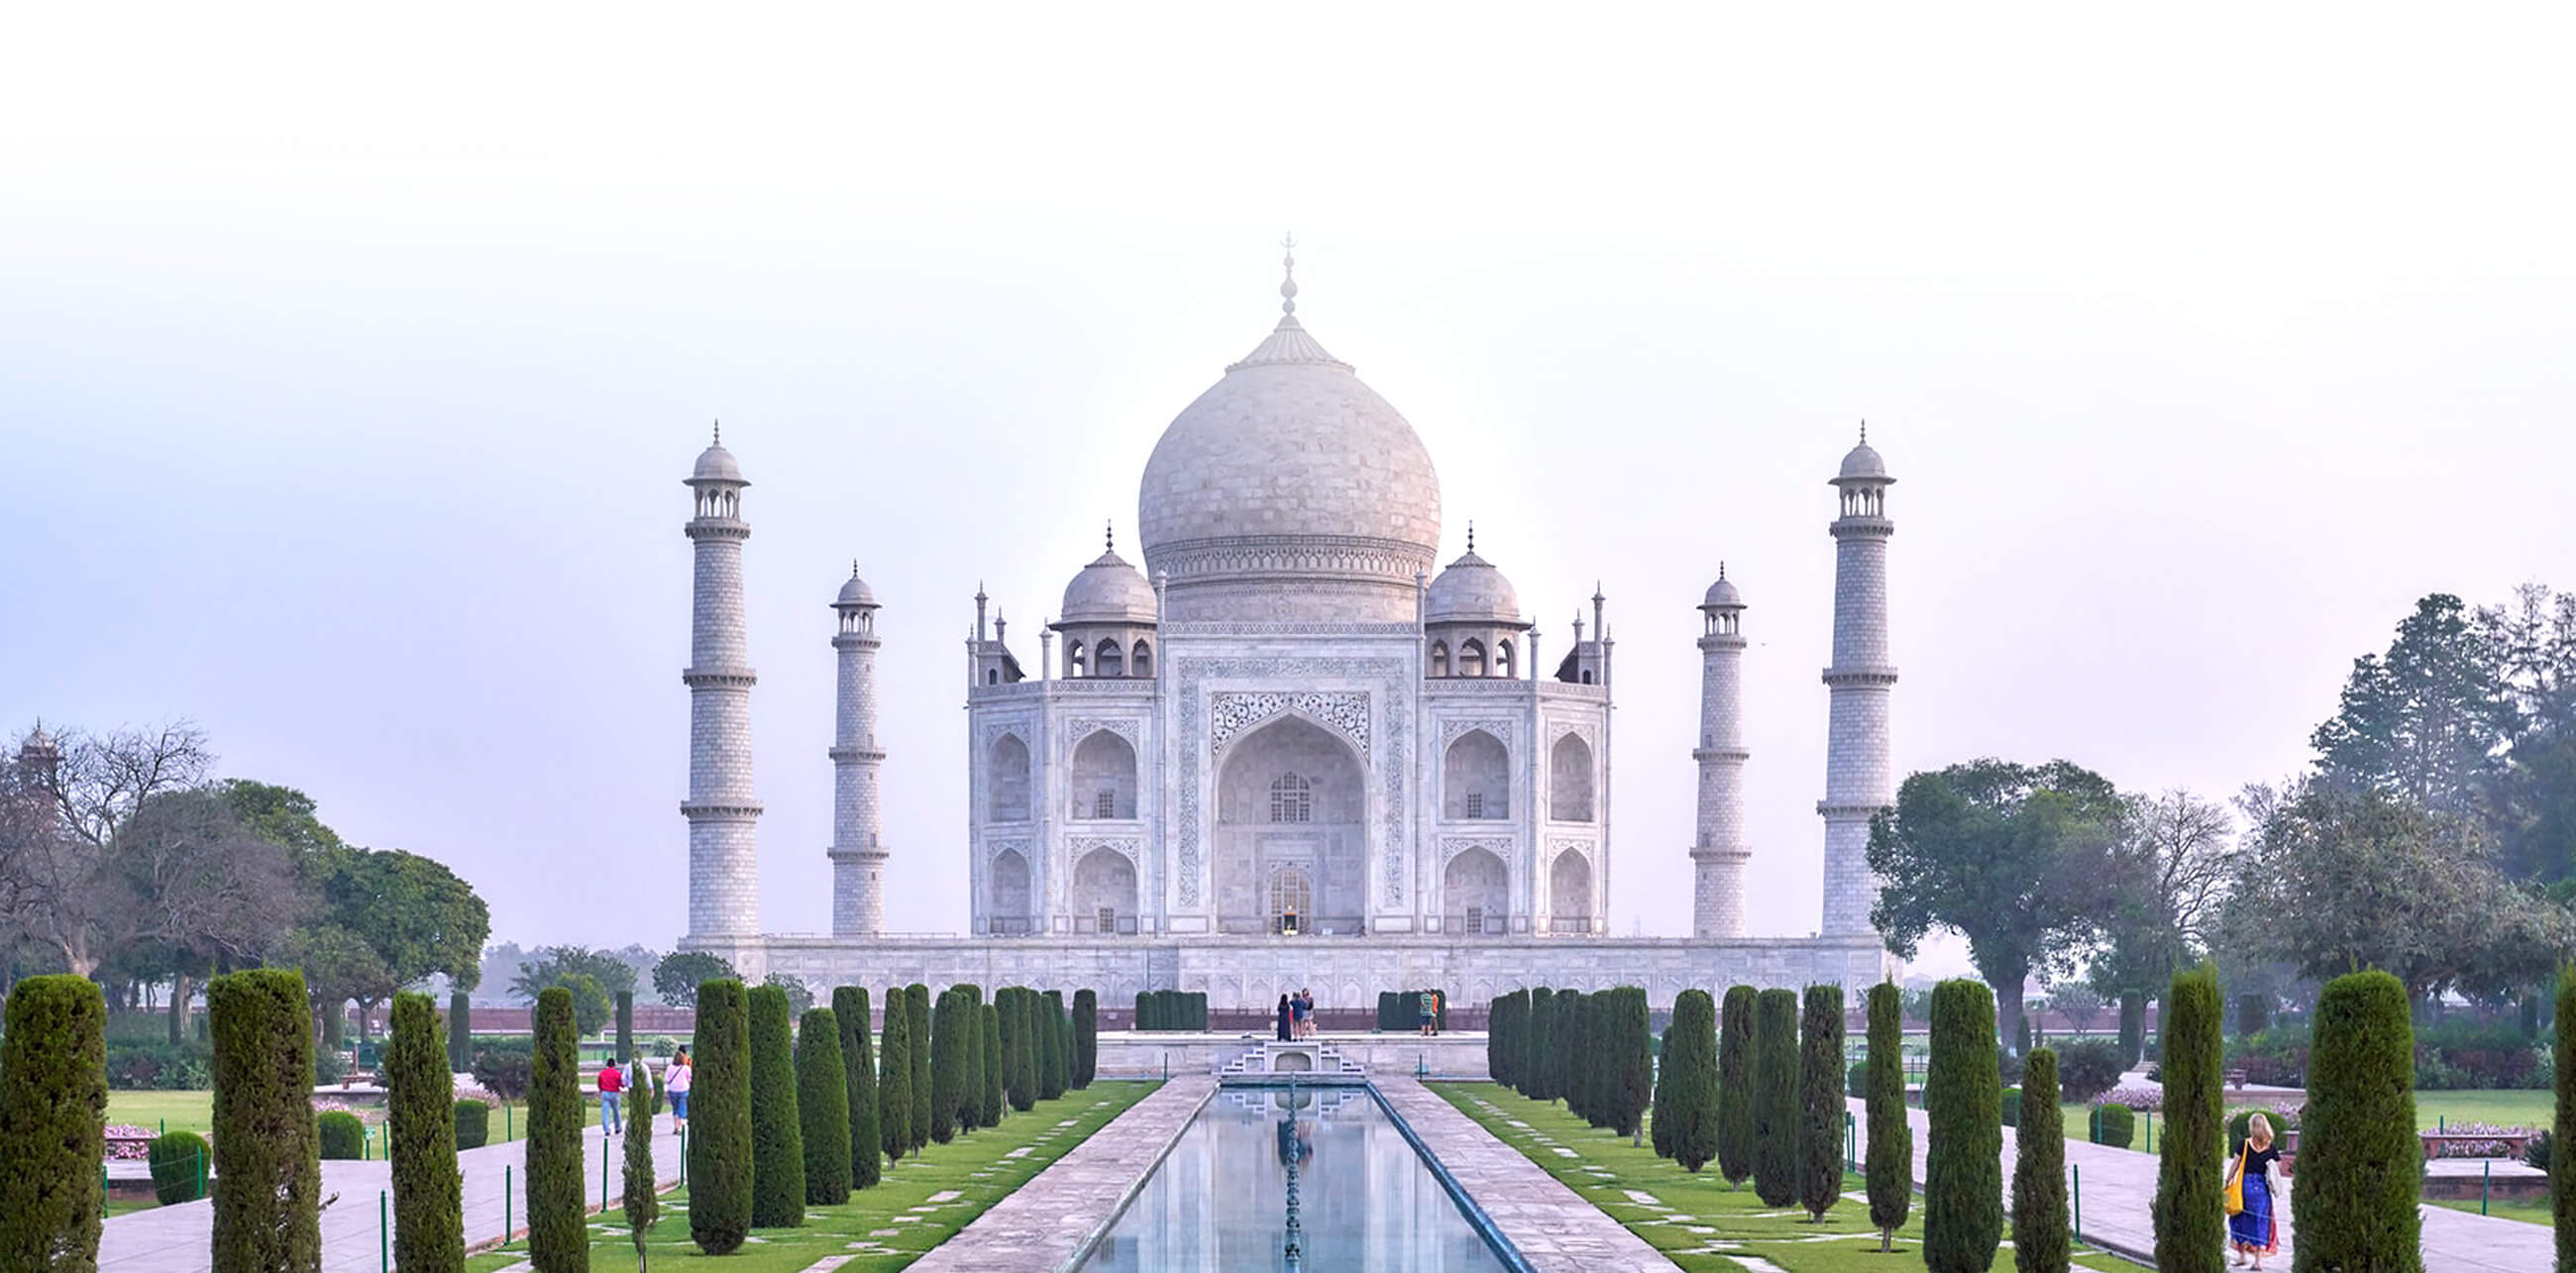 Taj Mahal, monumento funerario en la ciudad de agra a orillas del rio yamuna en india.